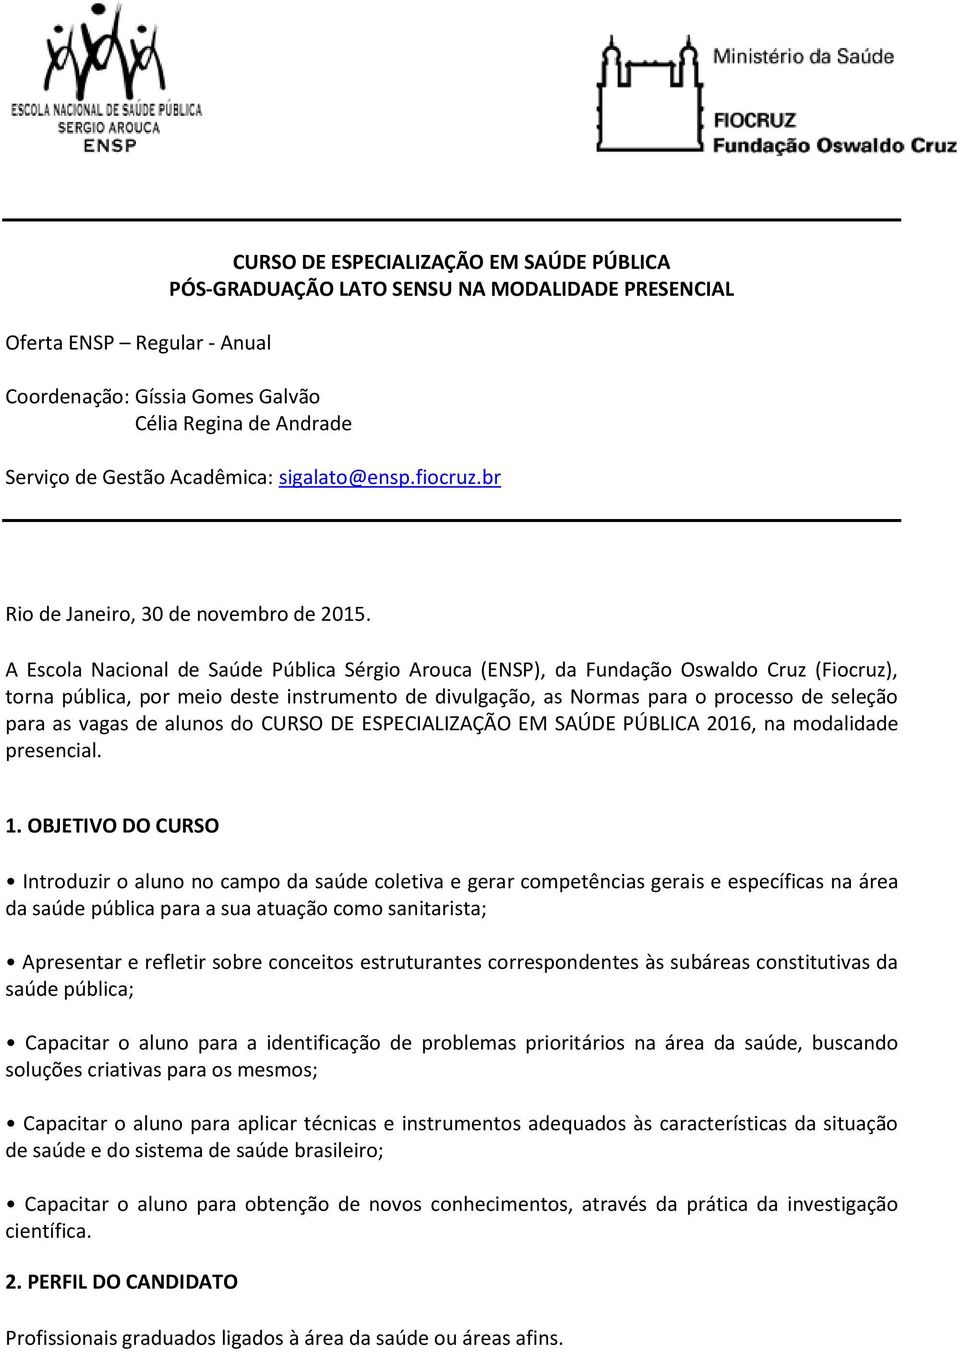 A Escola Nacional de Saúde Pública Sérgio Arouca (ENSP), da Fundação Oswaldo Cruz (Fiocruz), torna pública, por meio deste instrumento de divulgação, as Normas para o processo de seleção para as